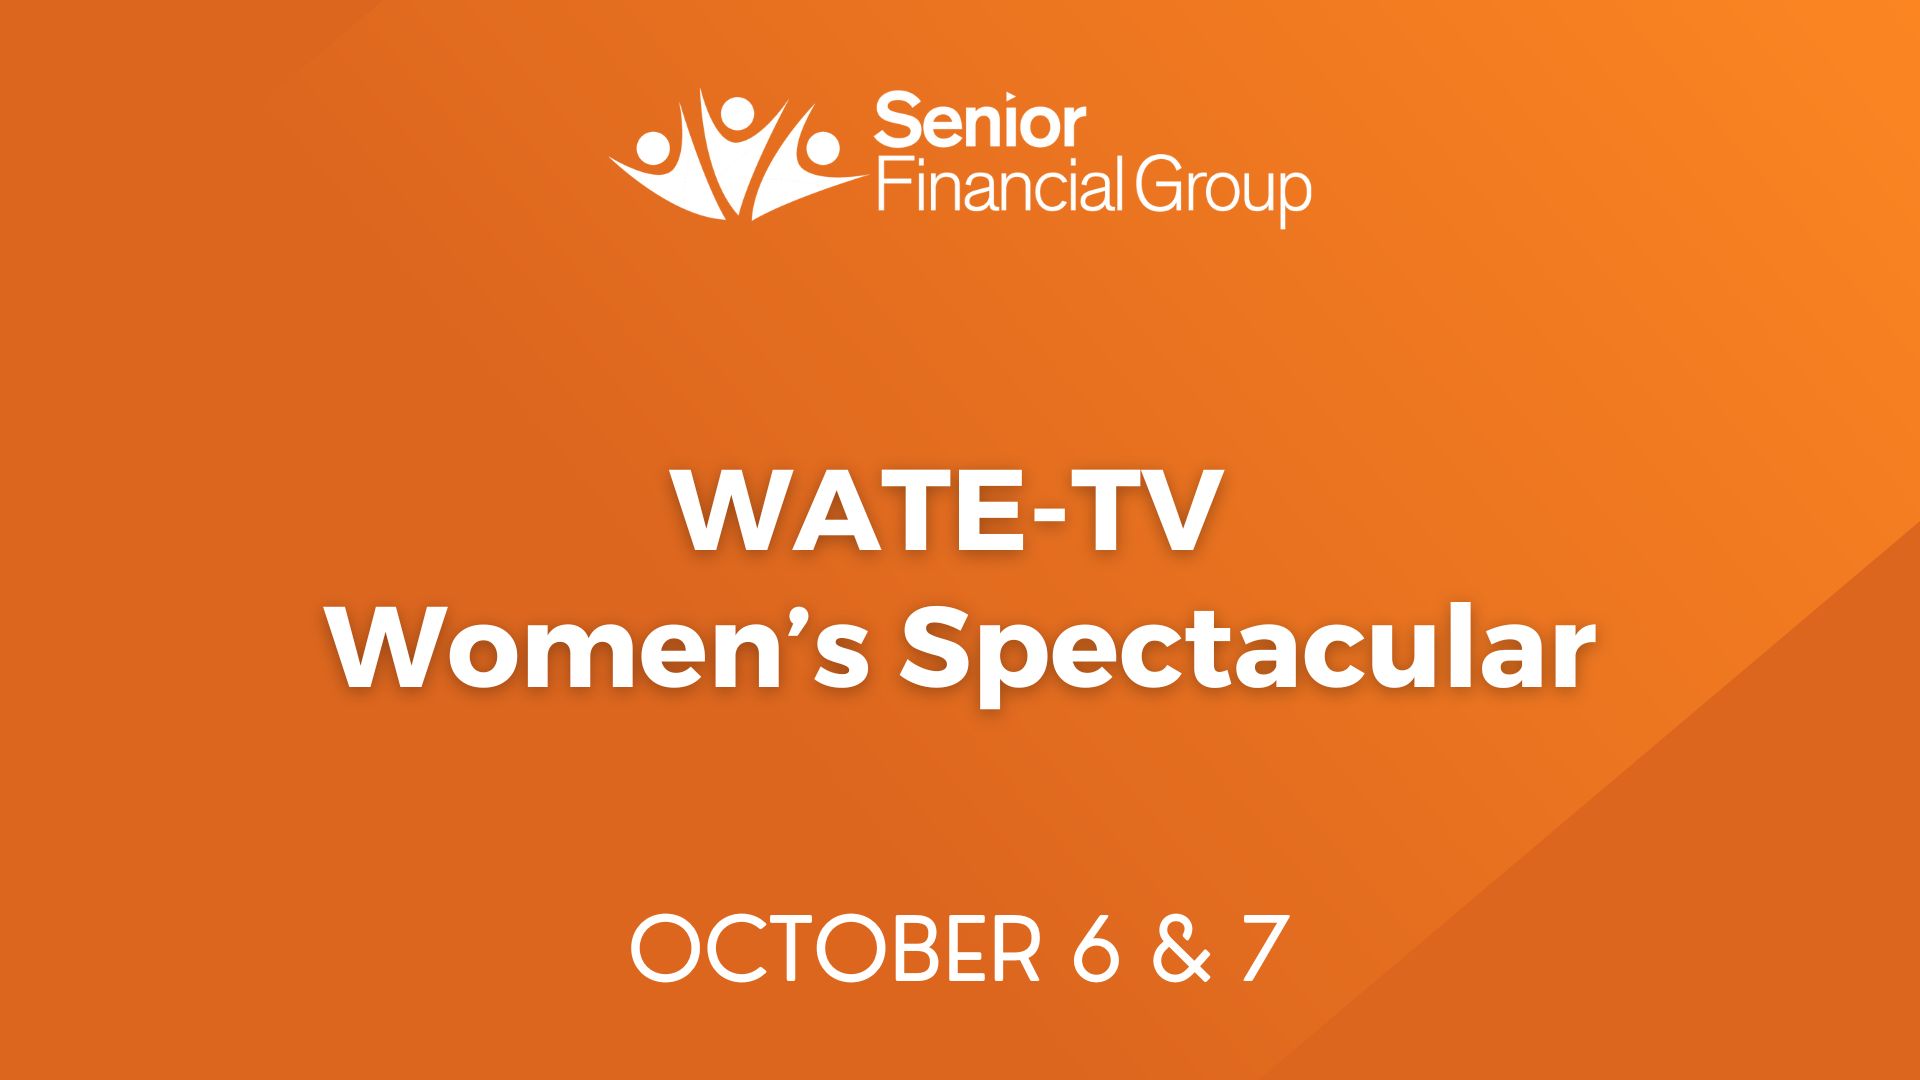 WATE-TV Women’s Spectacular